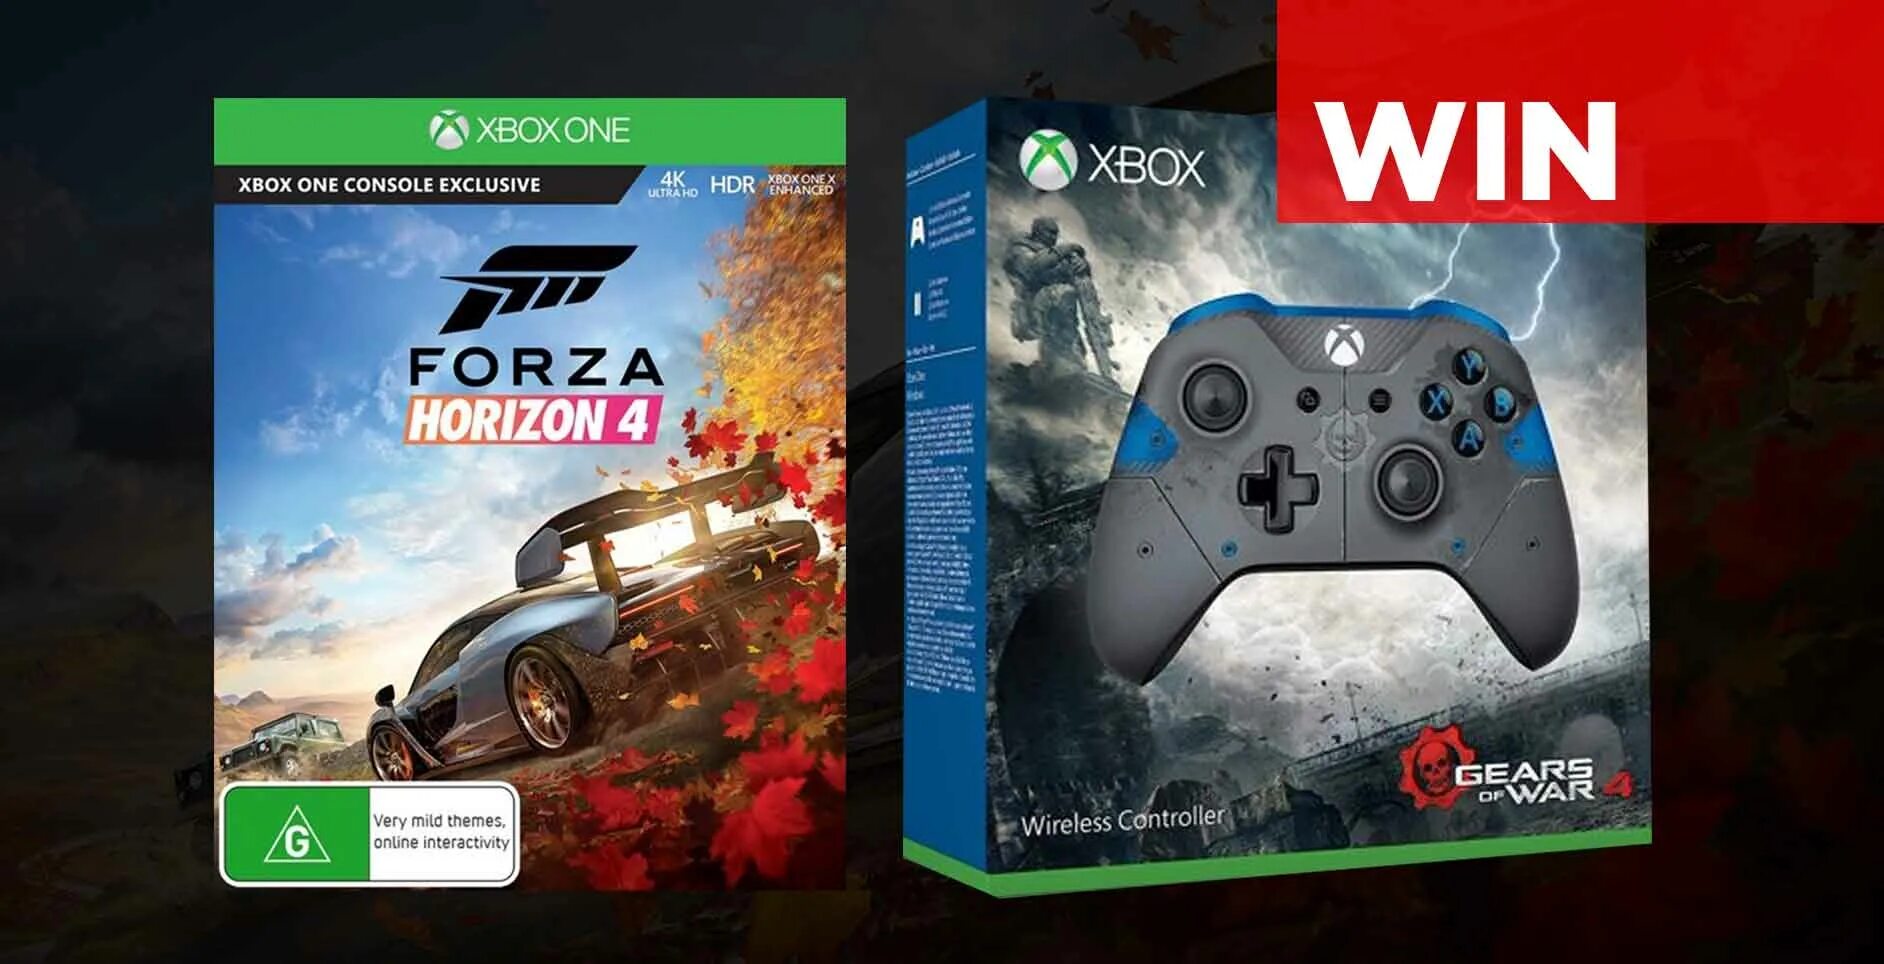 Horizon xbox series x. Xbox Gamepad Forza Horizon 5. Forza Horizon 4 Xbox 360. Forza Horizon 4 Ultimate Edition Xbox. Xbox one s Forza Horizon 4.